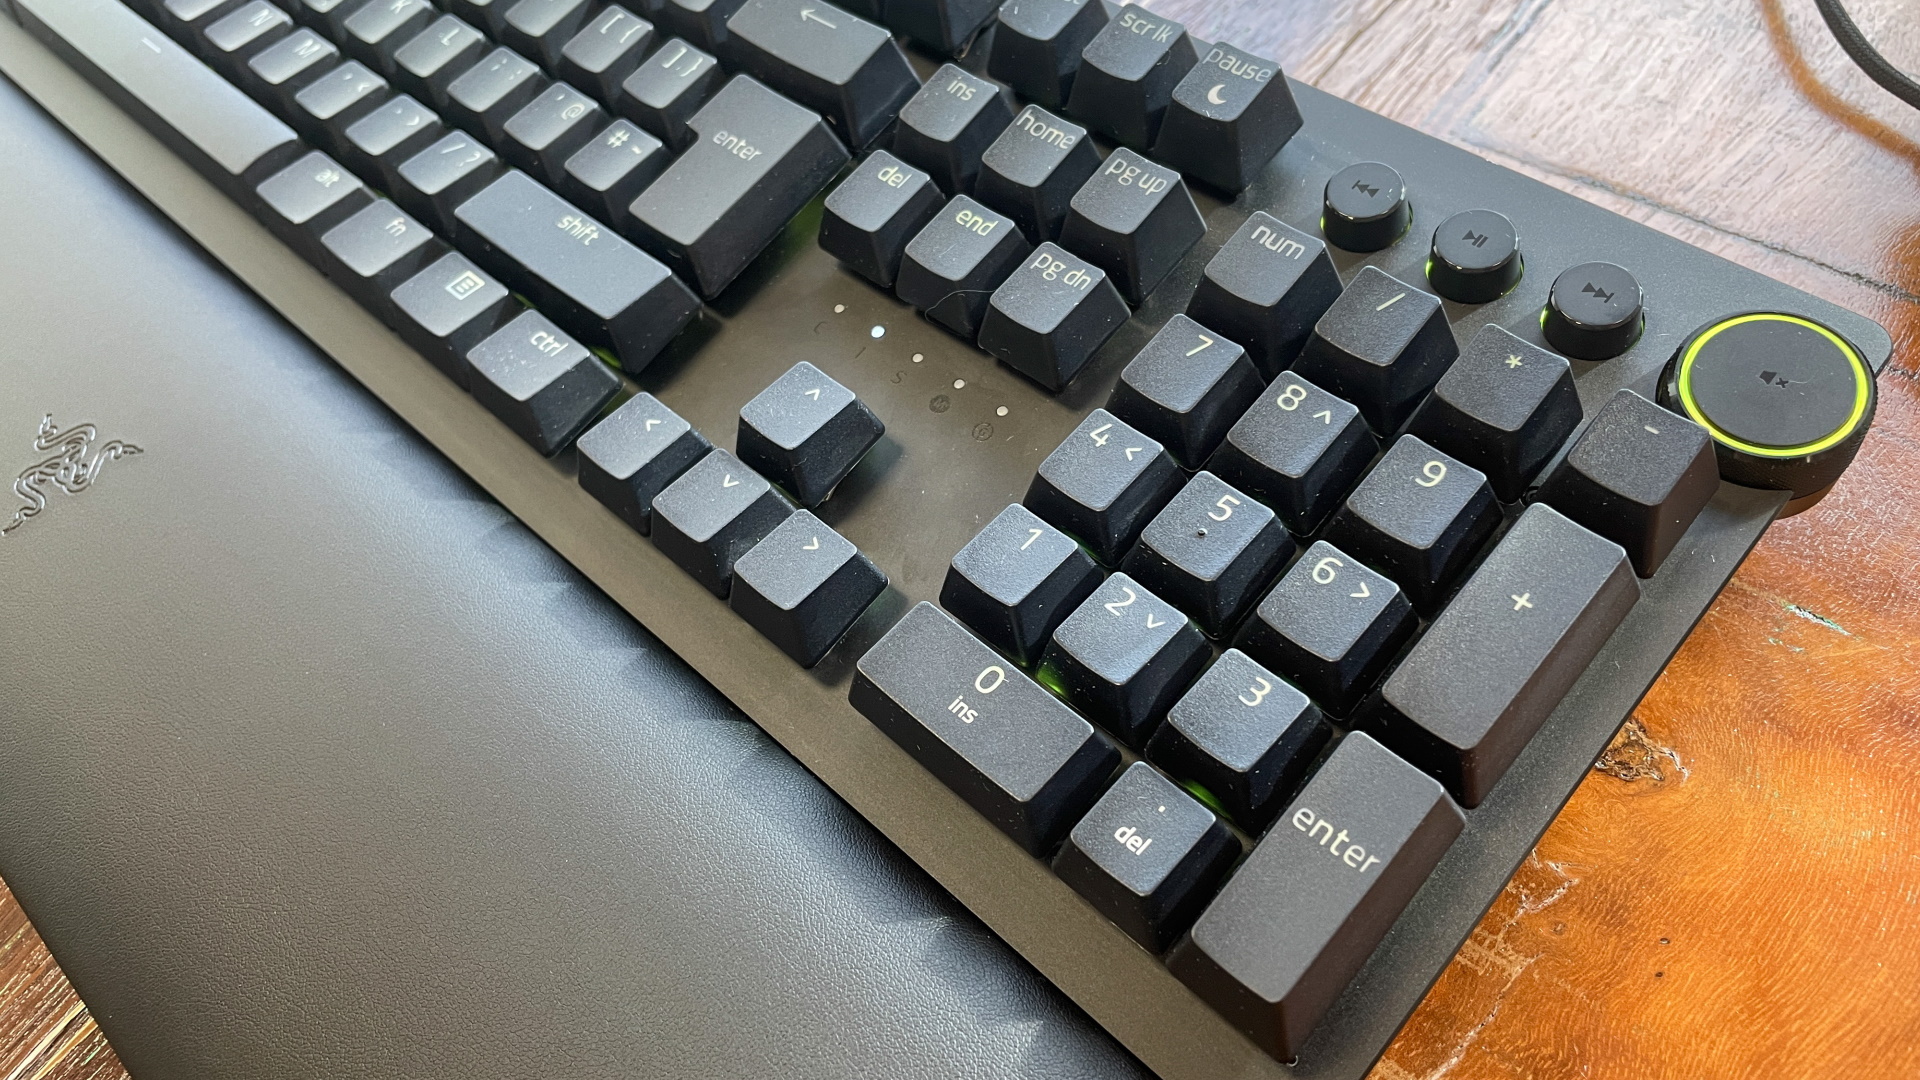 Razer Huntsman V2 gaming keyboard